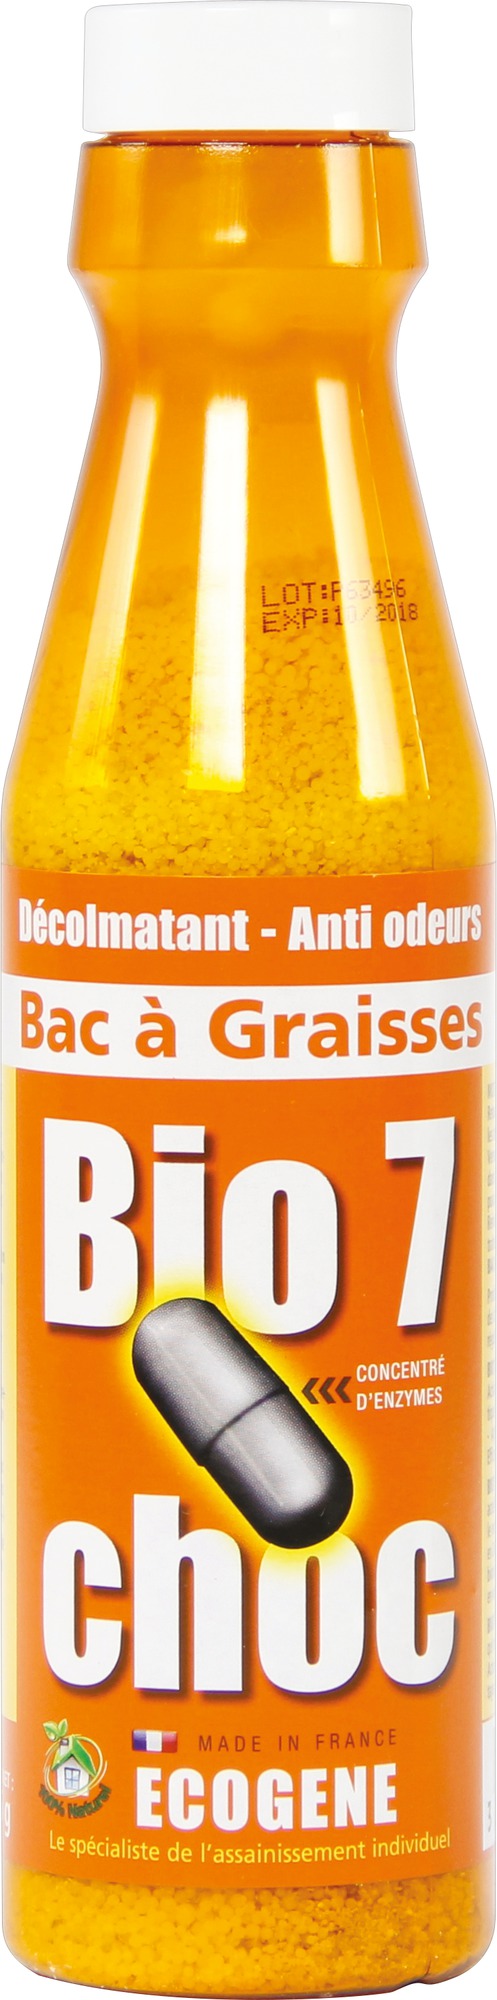 Bio 7G choc bac à graisse Ecogène - Flacon 375 g